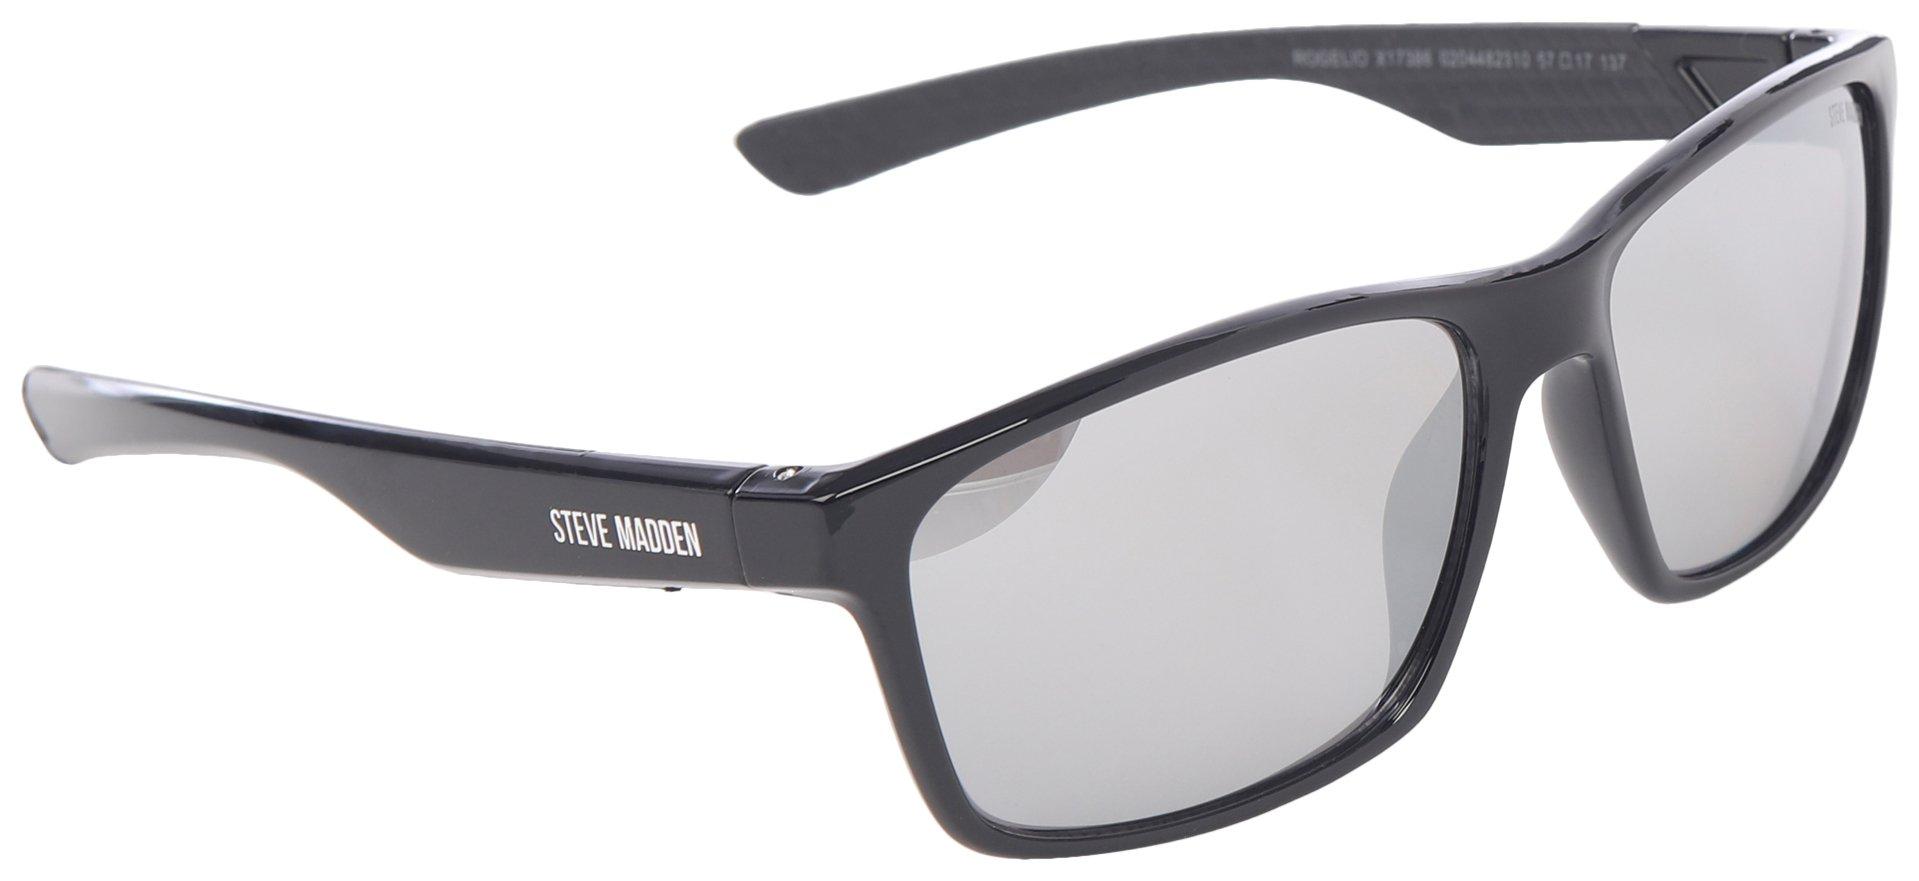 Steve Madden Mens Rectangular Mirror Sunglasses